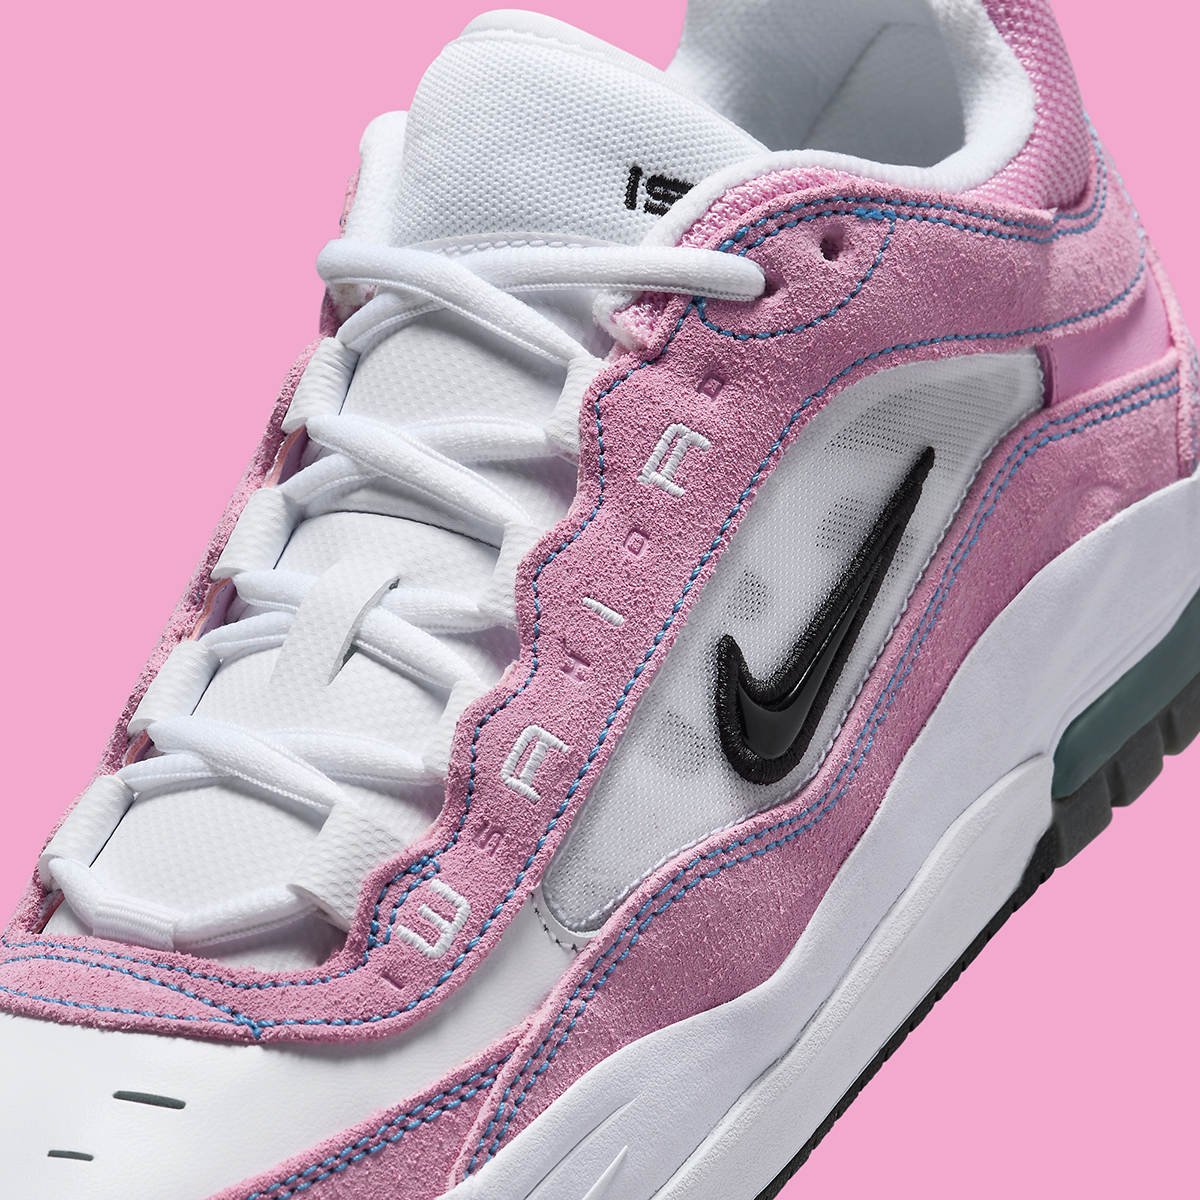 Nike Sb Ishod 2 Pink White Fb2393 600 2